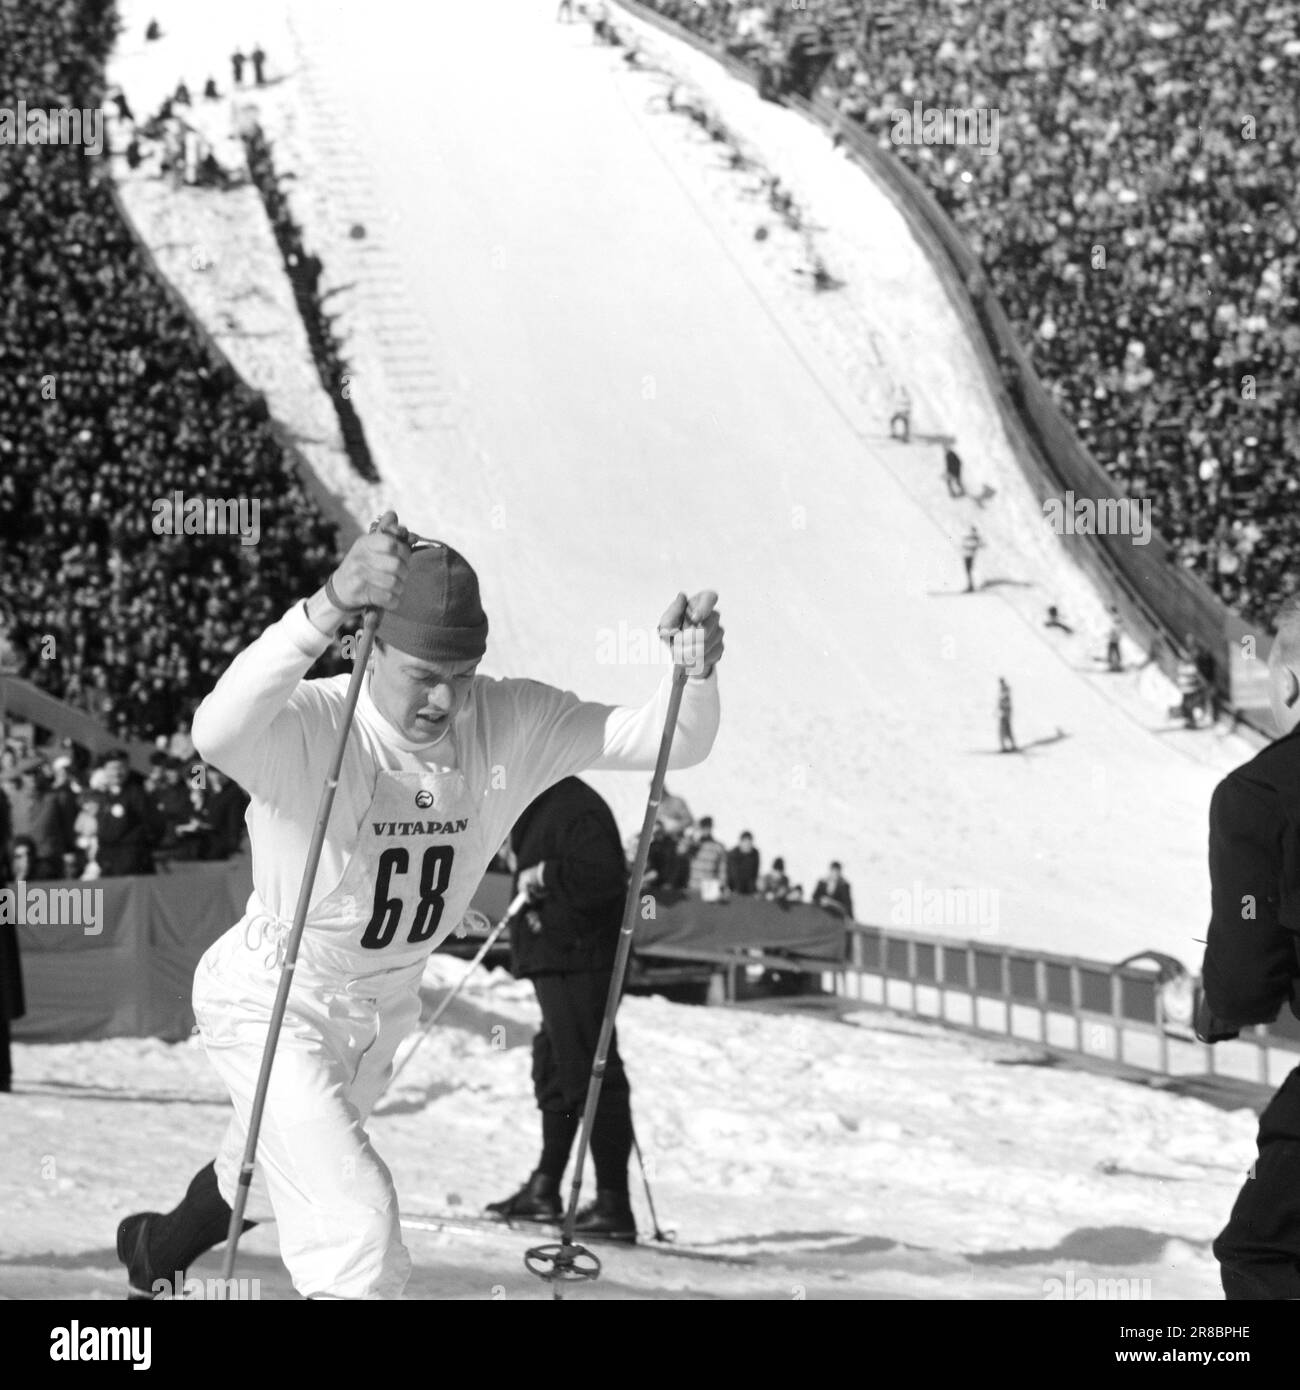 Actuel 15-3-1960: Nous avons gagné et nous avons gagné... Les cavaliers ont recueilli des records d'audience et les skieurs de fond ont fait l'histoire du ski. Photo: Sverre A. Børretzen / Aage Storløkken / Aktuell / NTB ***PHOTO NON TRAITÉE*** Banque D'Images